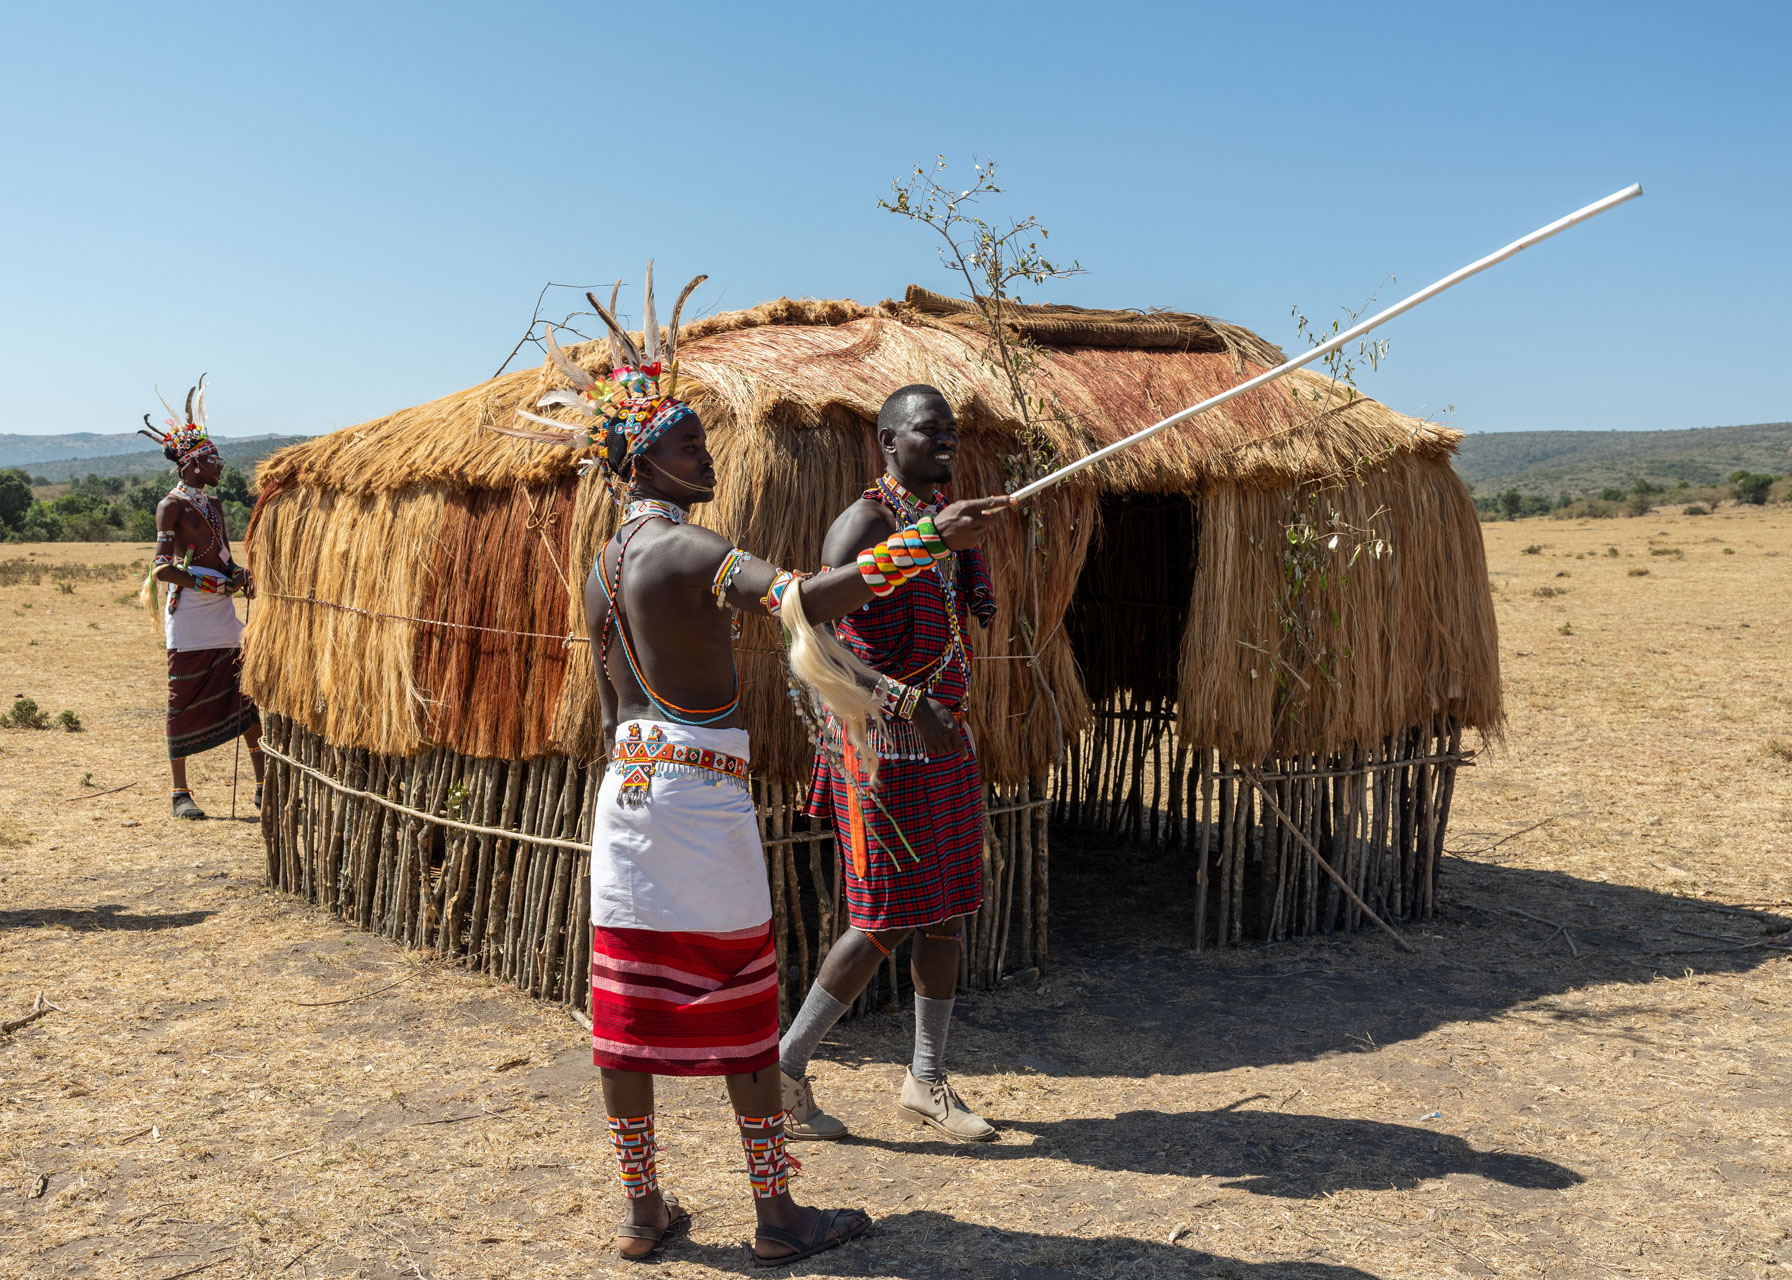 Traditionally nomadic, this hut reflects the Maasai way of life 